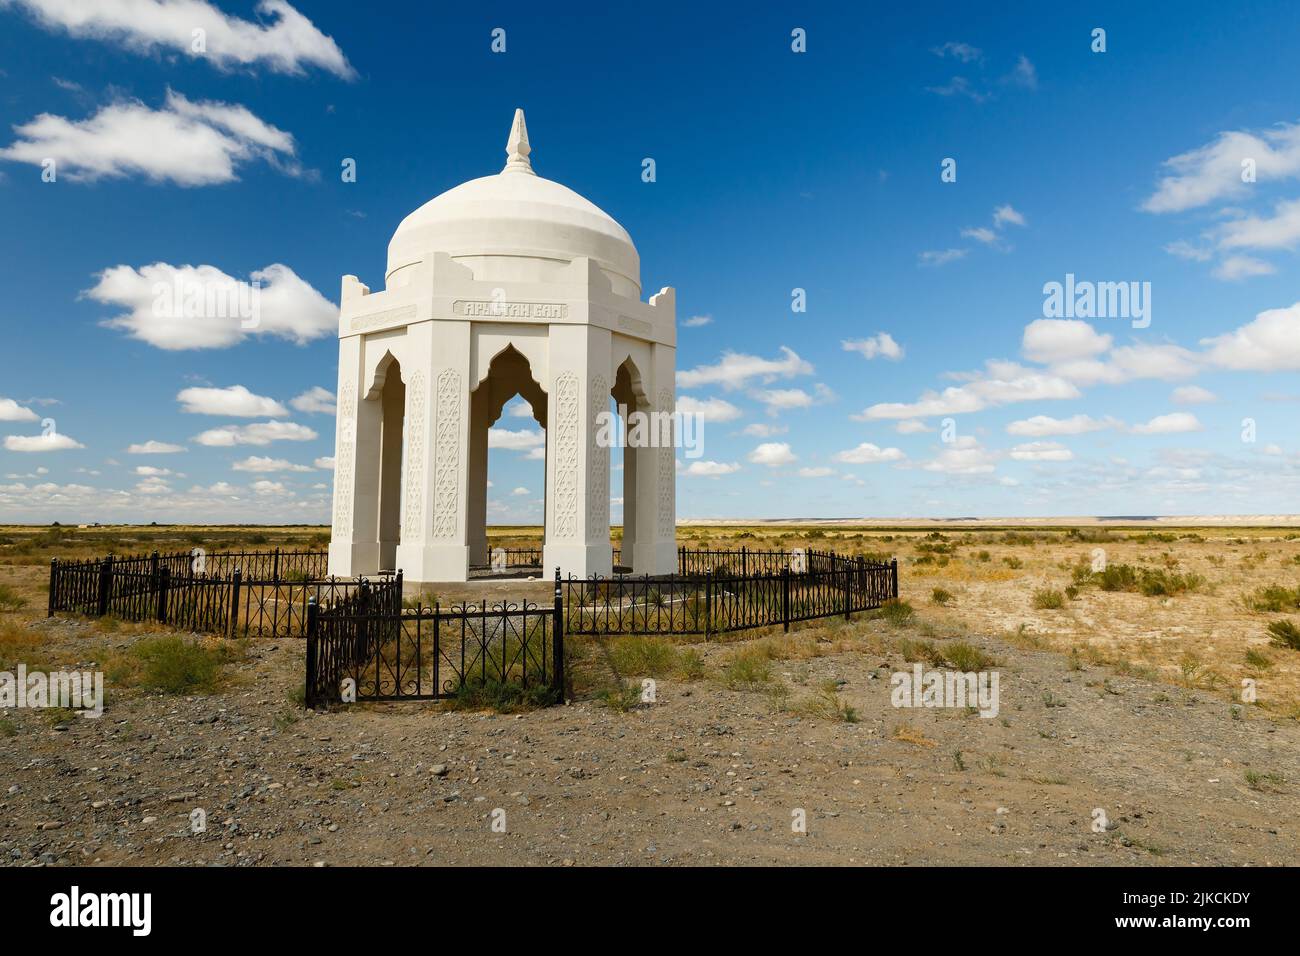 District de Kazaly, région de Kyzylorda, Kazakhstan - 31 août 2019 : complexe commémoratif de pierre blanche dans la steppe. bap d'Arystan Banque D'Images